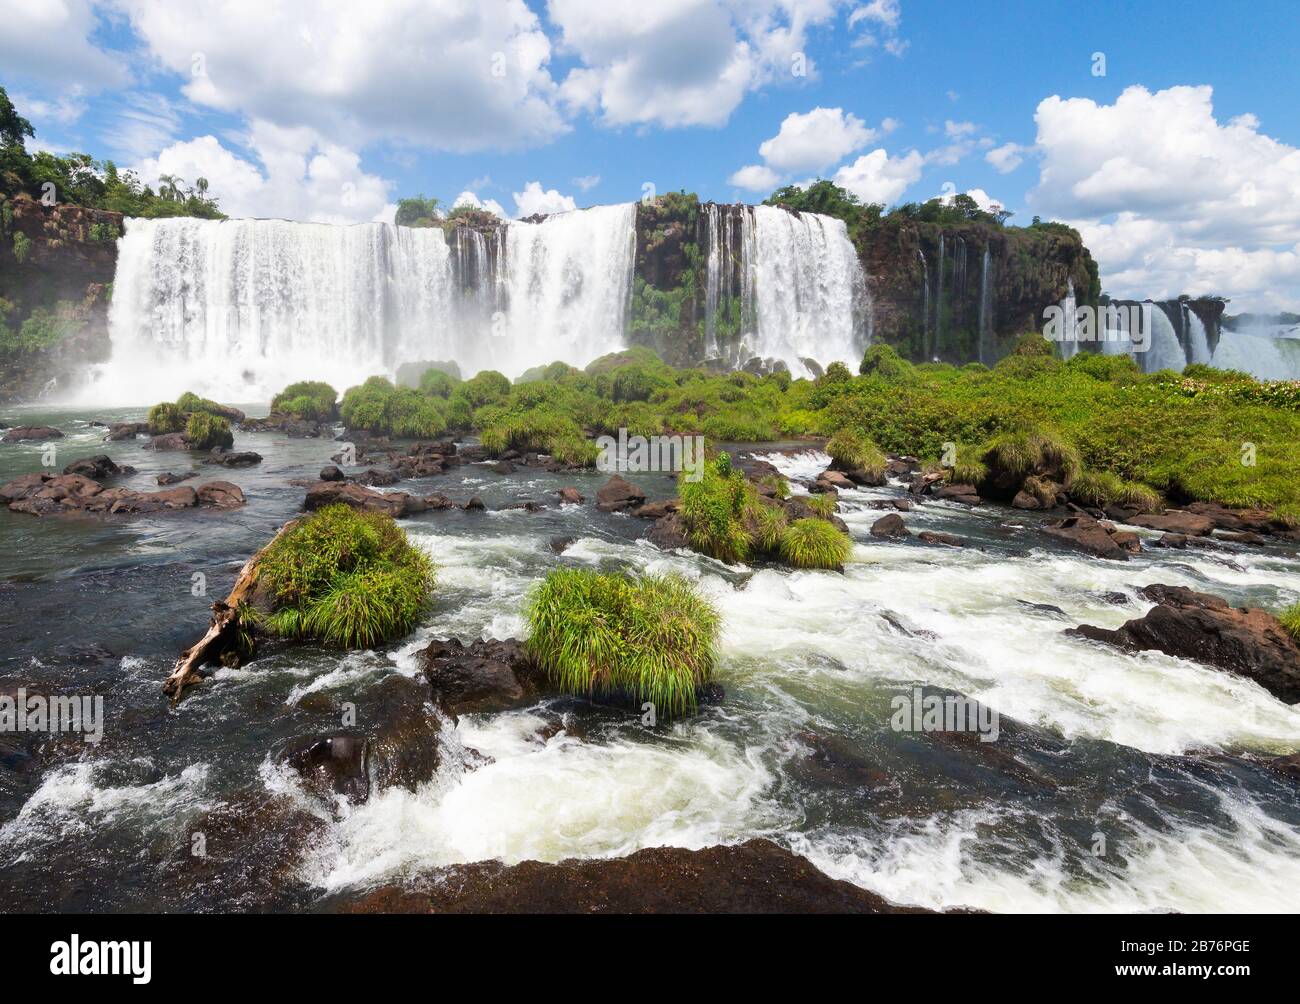 Chutes d'Iguaçu dans le parc national d'Iguazu au Brésil. Le débit d'eau de la rivière Parana montre des chutes et un fort cours d'eau. Banque D'Images